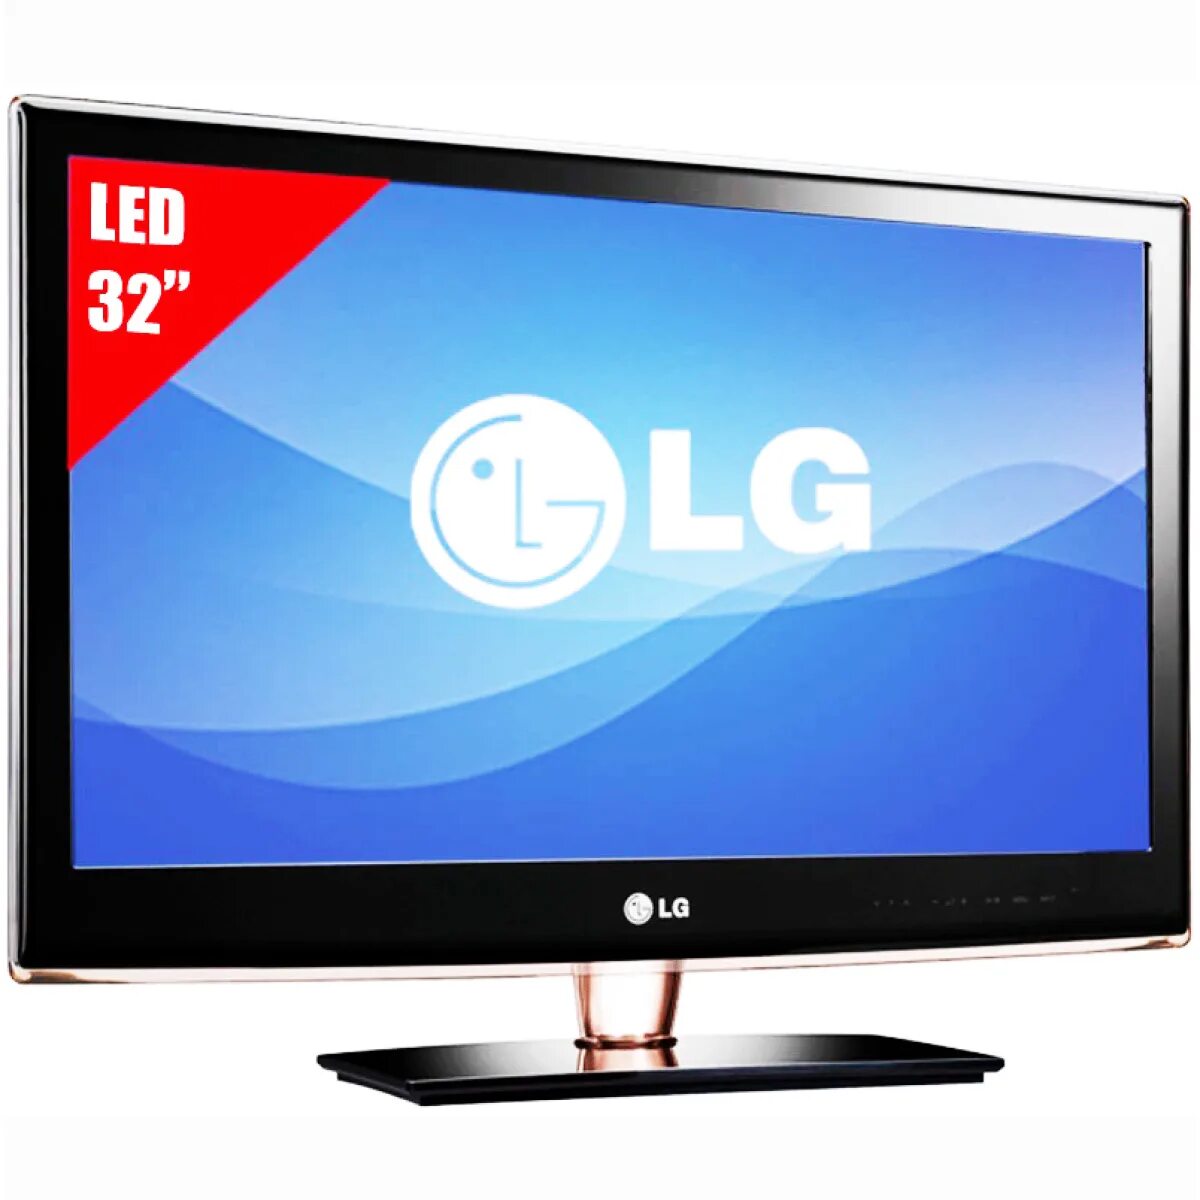 LG led TV 32. LG led LCD 3d TV 32lb2. LG 32 led Television. ДНС телевизоры 32 дюйма Лджи. Поддержка lg телевизоров